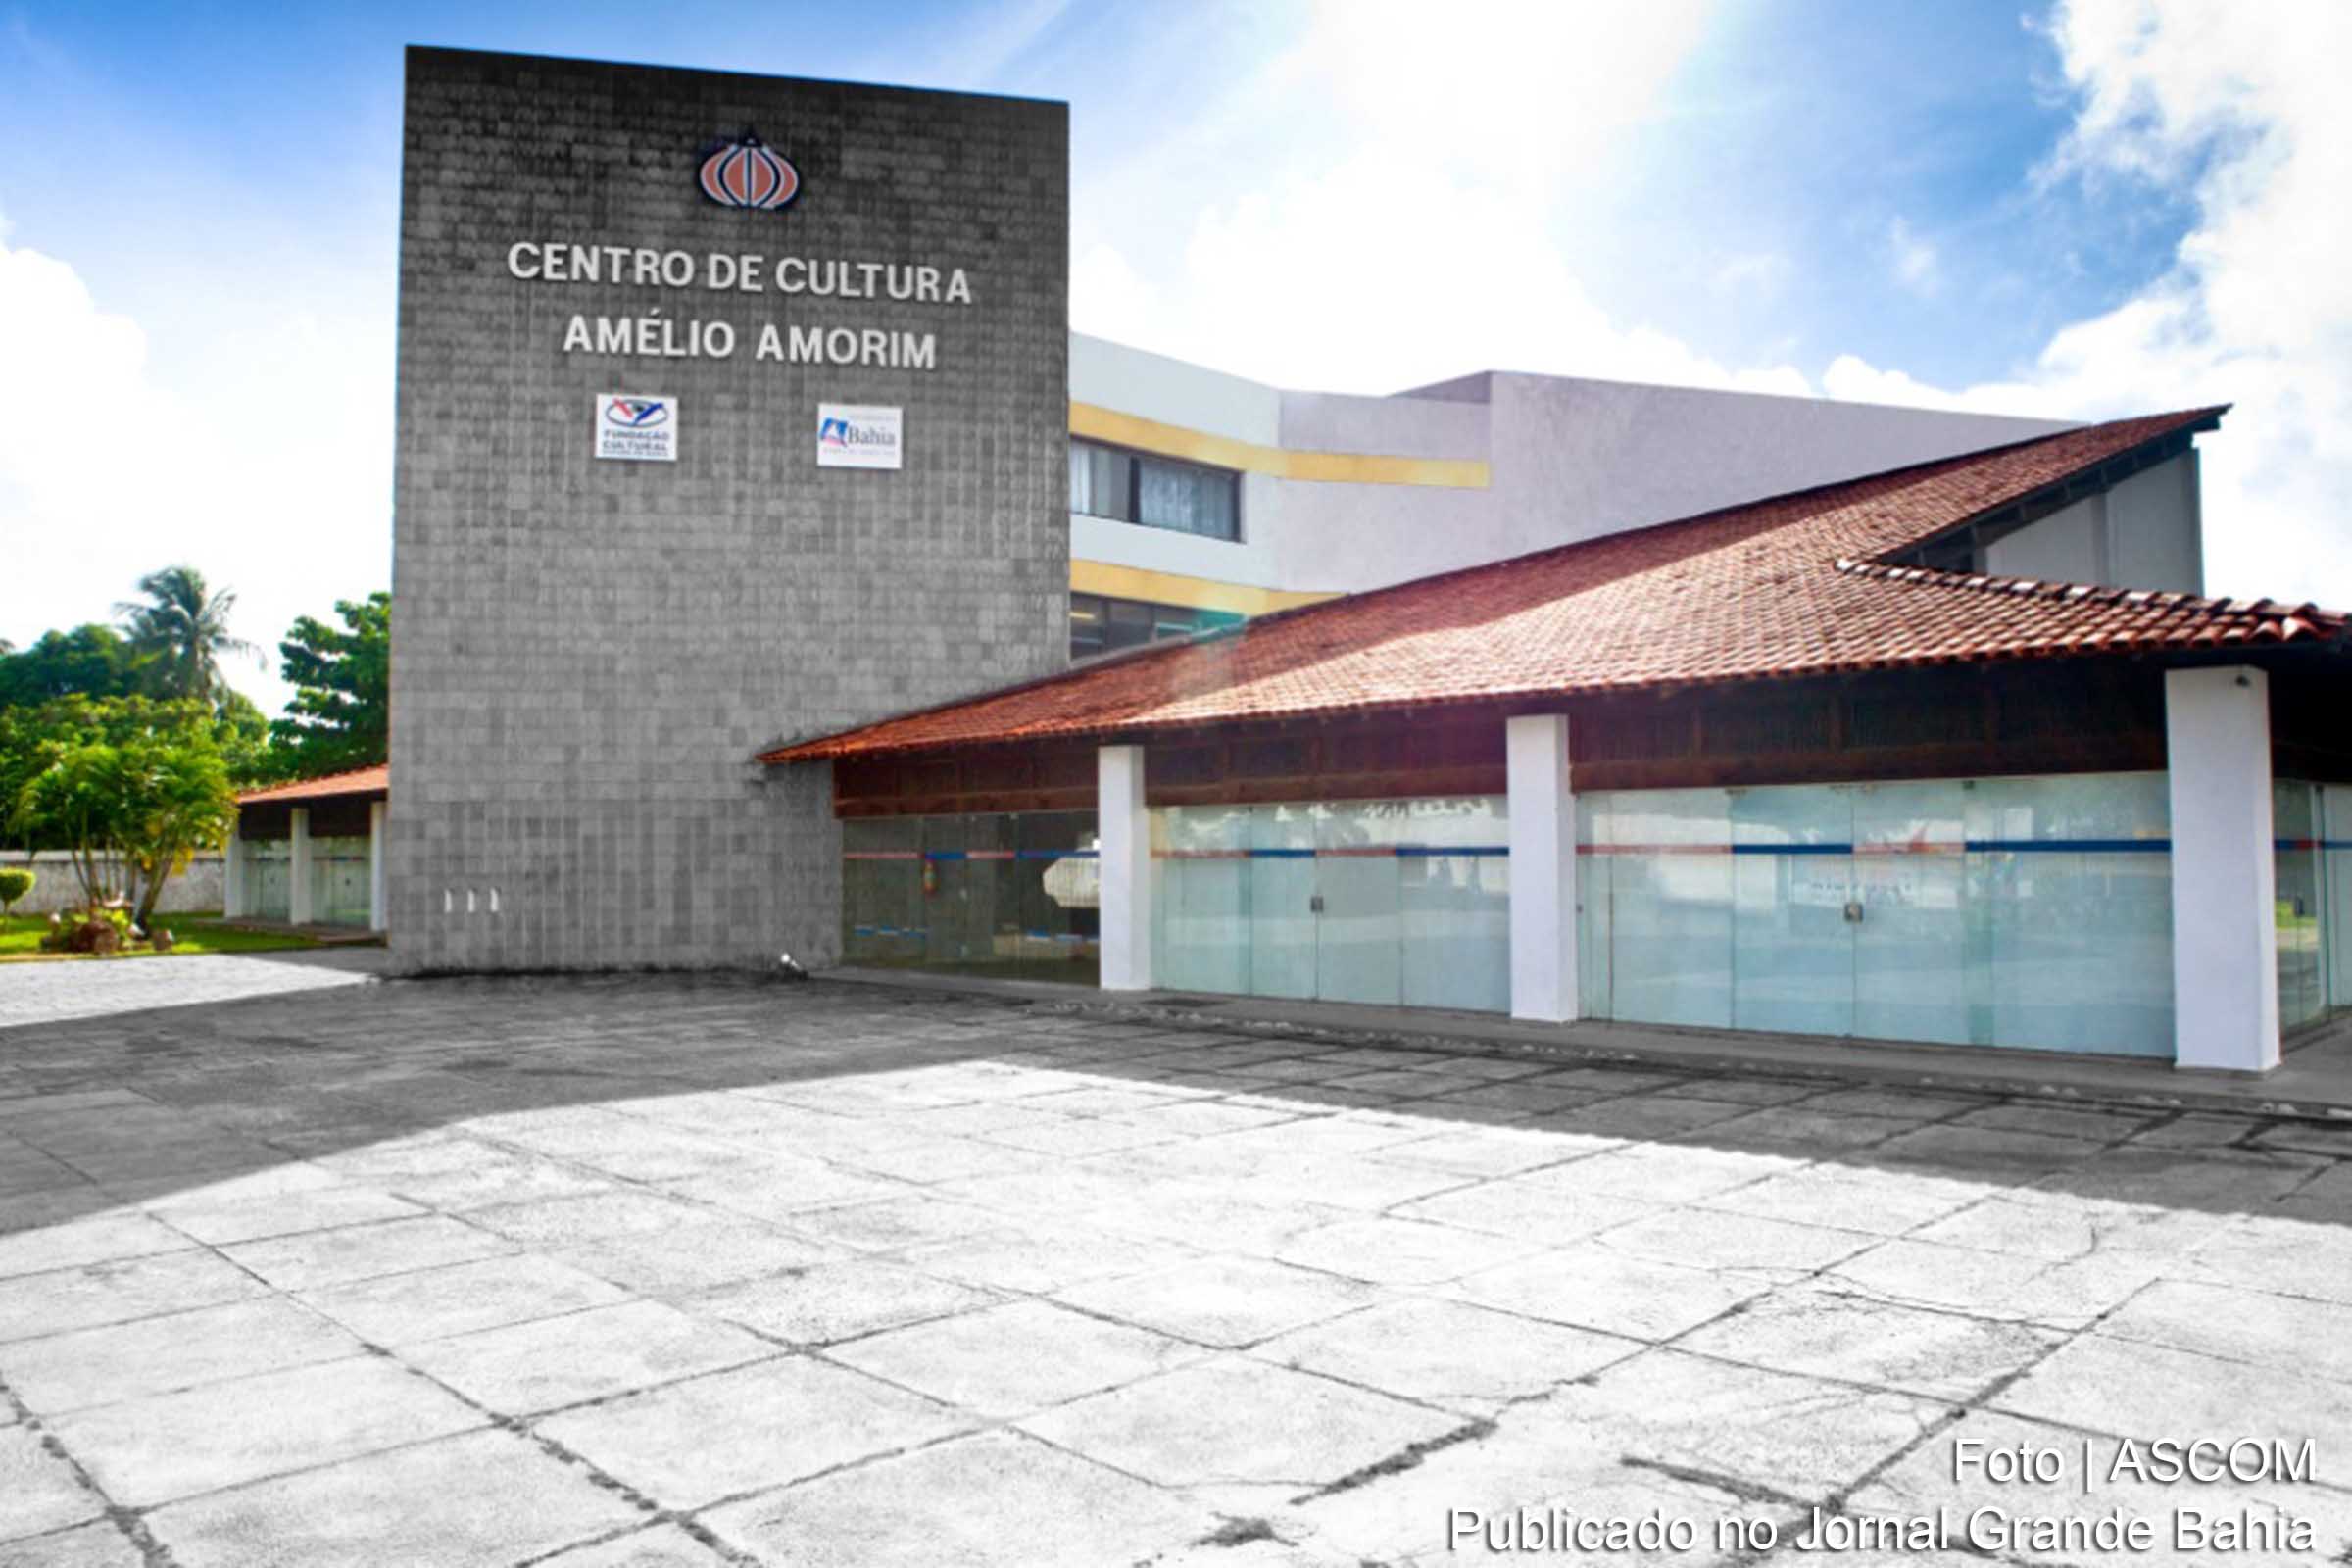 I Mostra de Cinema Contemporâneo do Nordeste ocorre no Centro de Cultura Amelio Amorim (CCAAm).